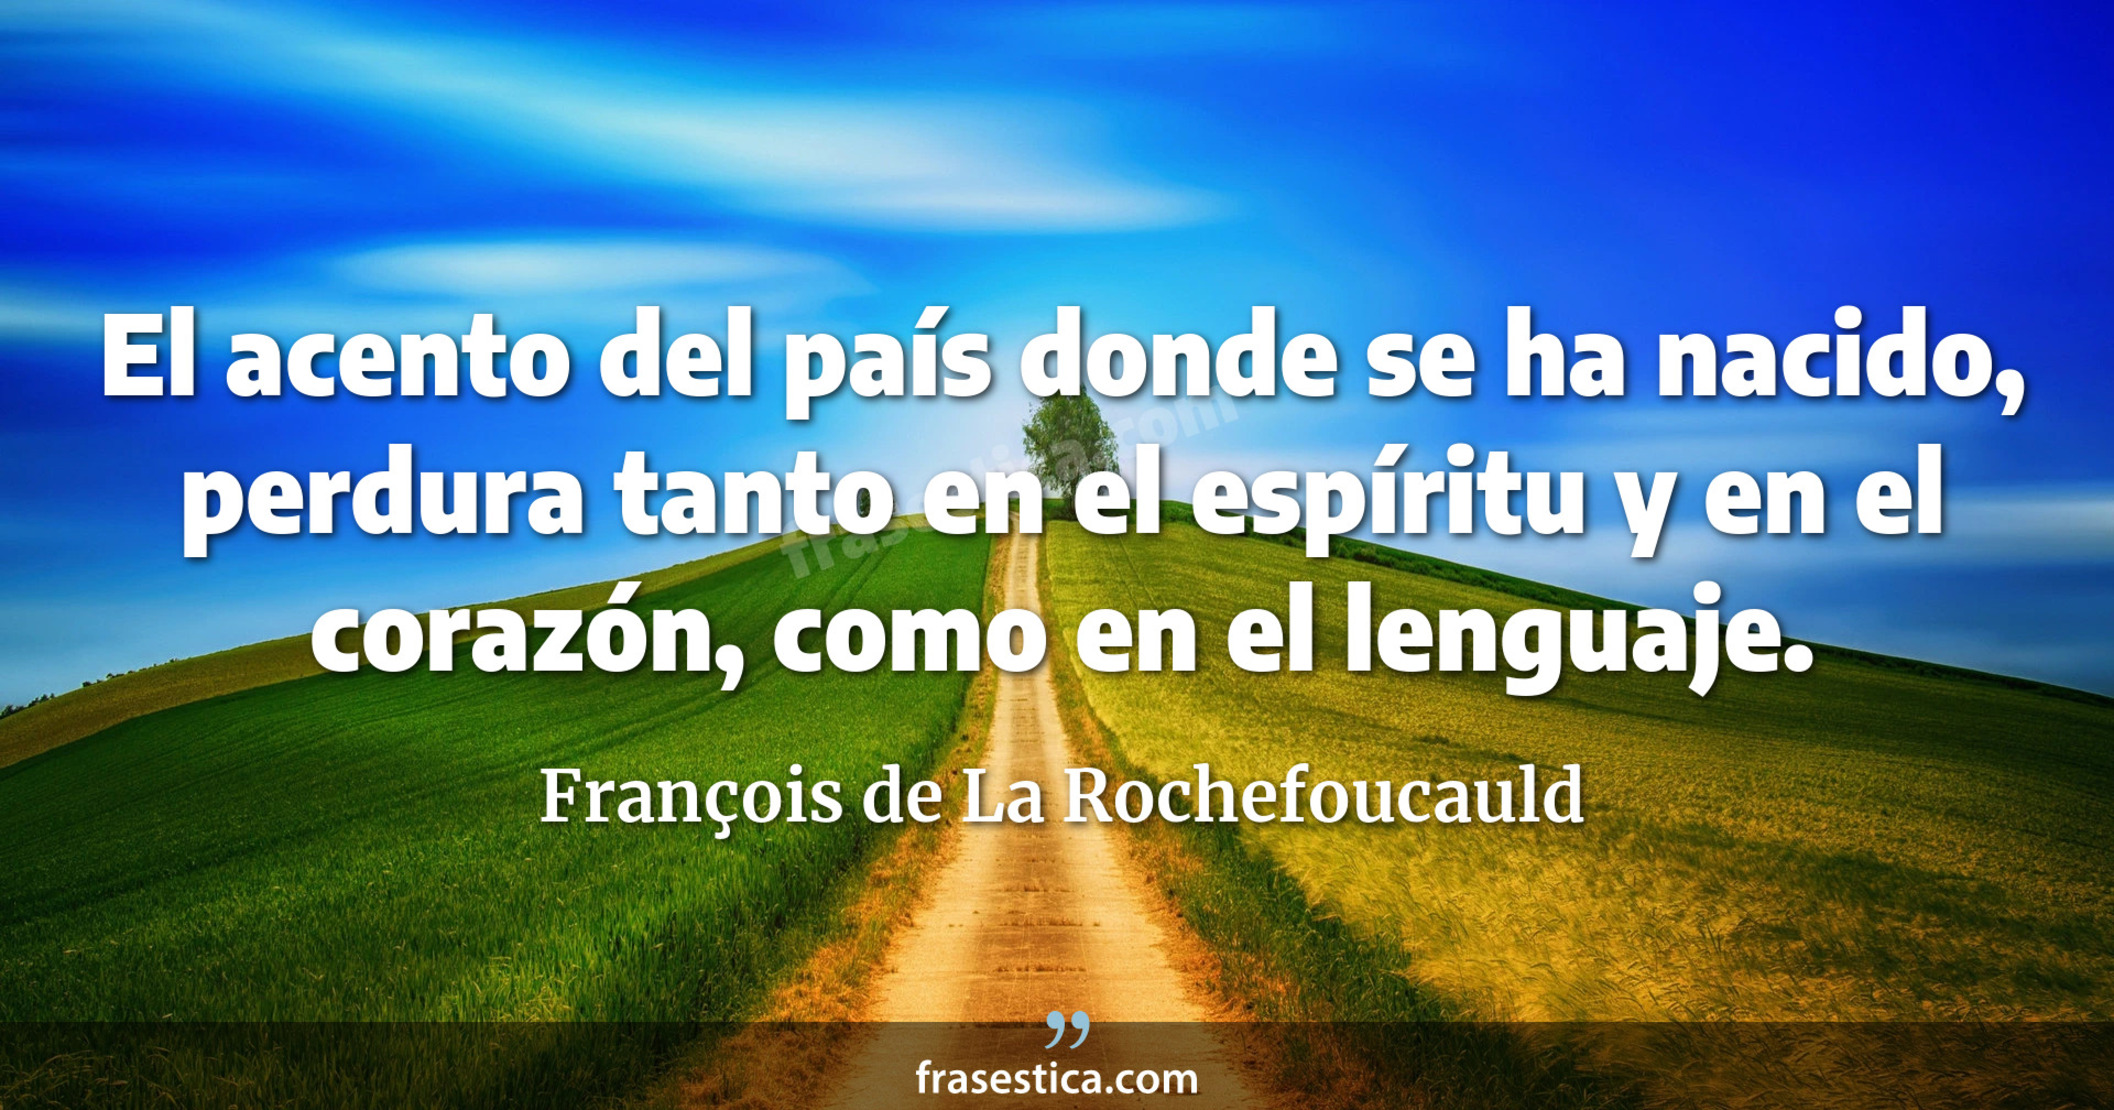 El acento del país donde se ha nacido, perdura tanto en el espíritu y en el corazón, como en el lenguaje. - François de La Rochefoucauld